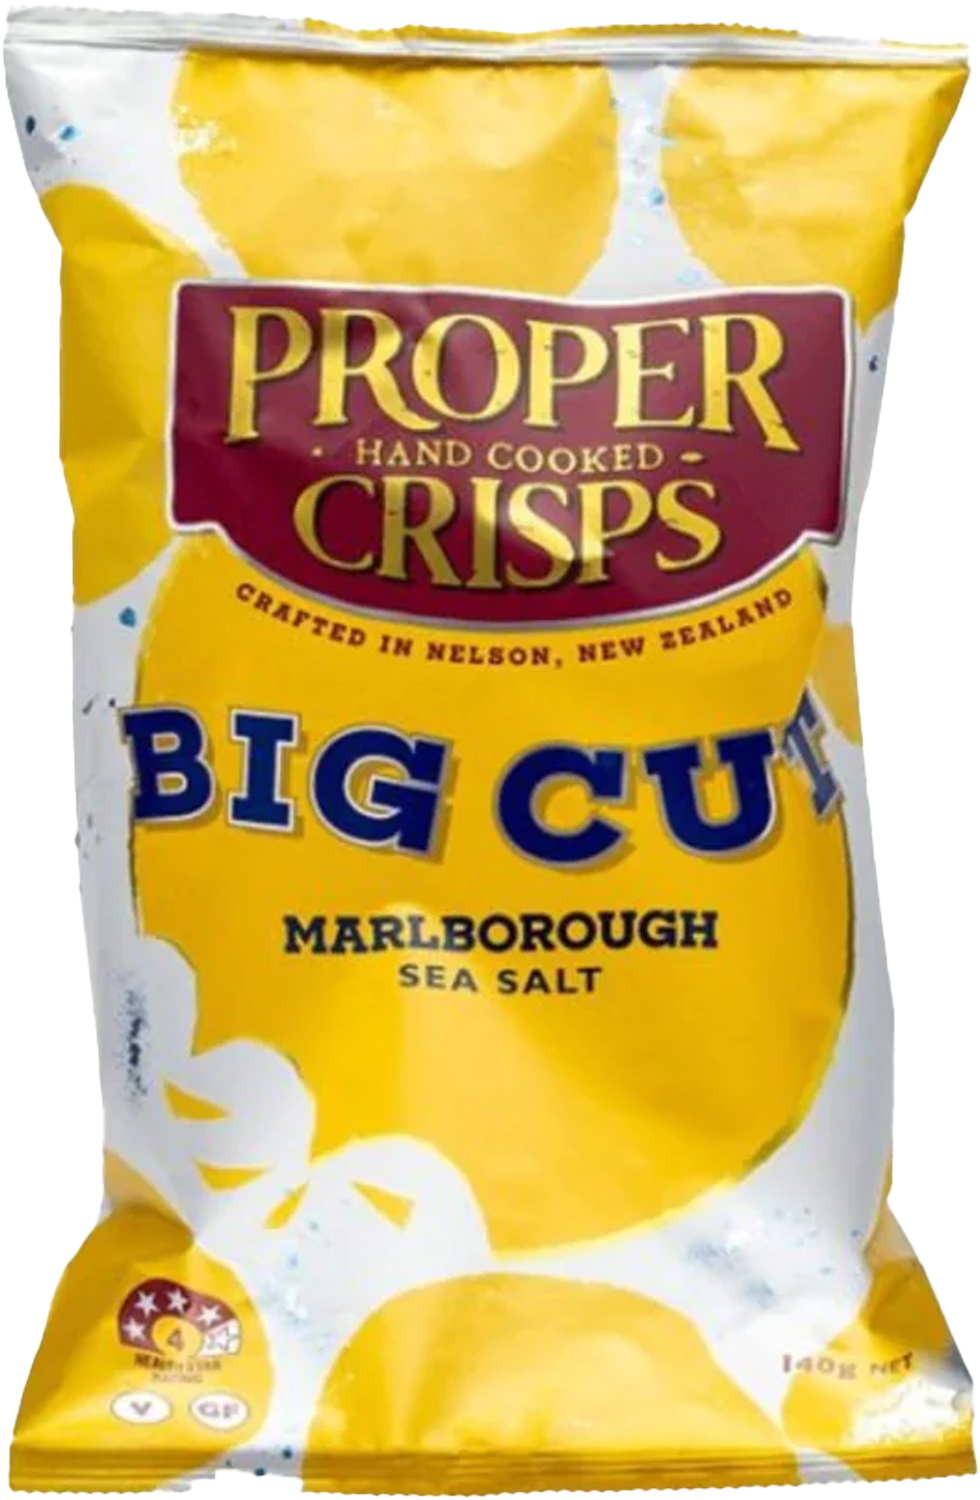 Proper Crisps - Big Cut Marlborough Sea Salt